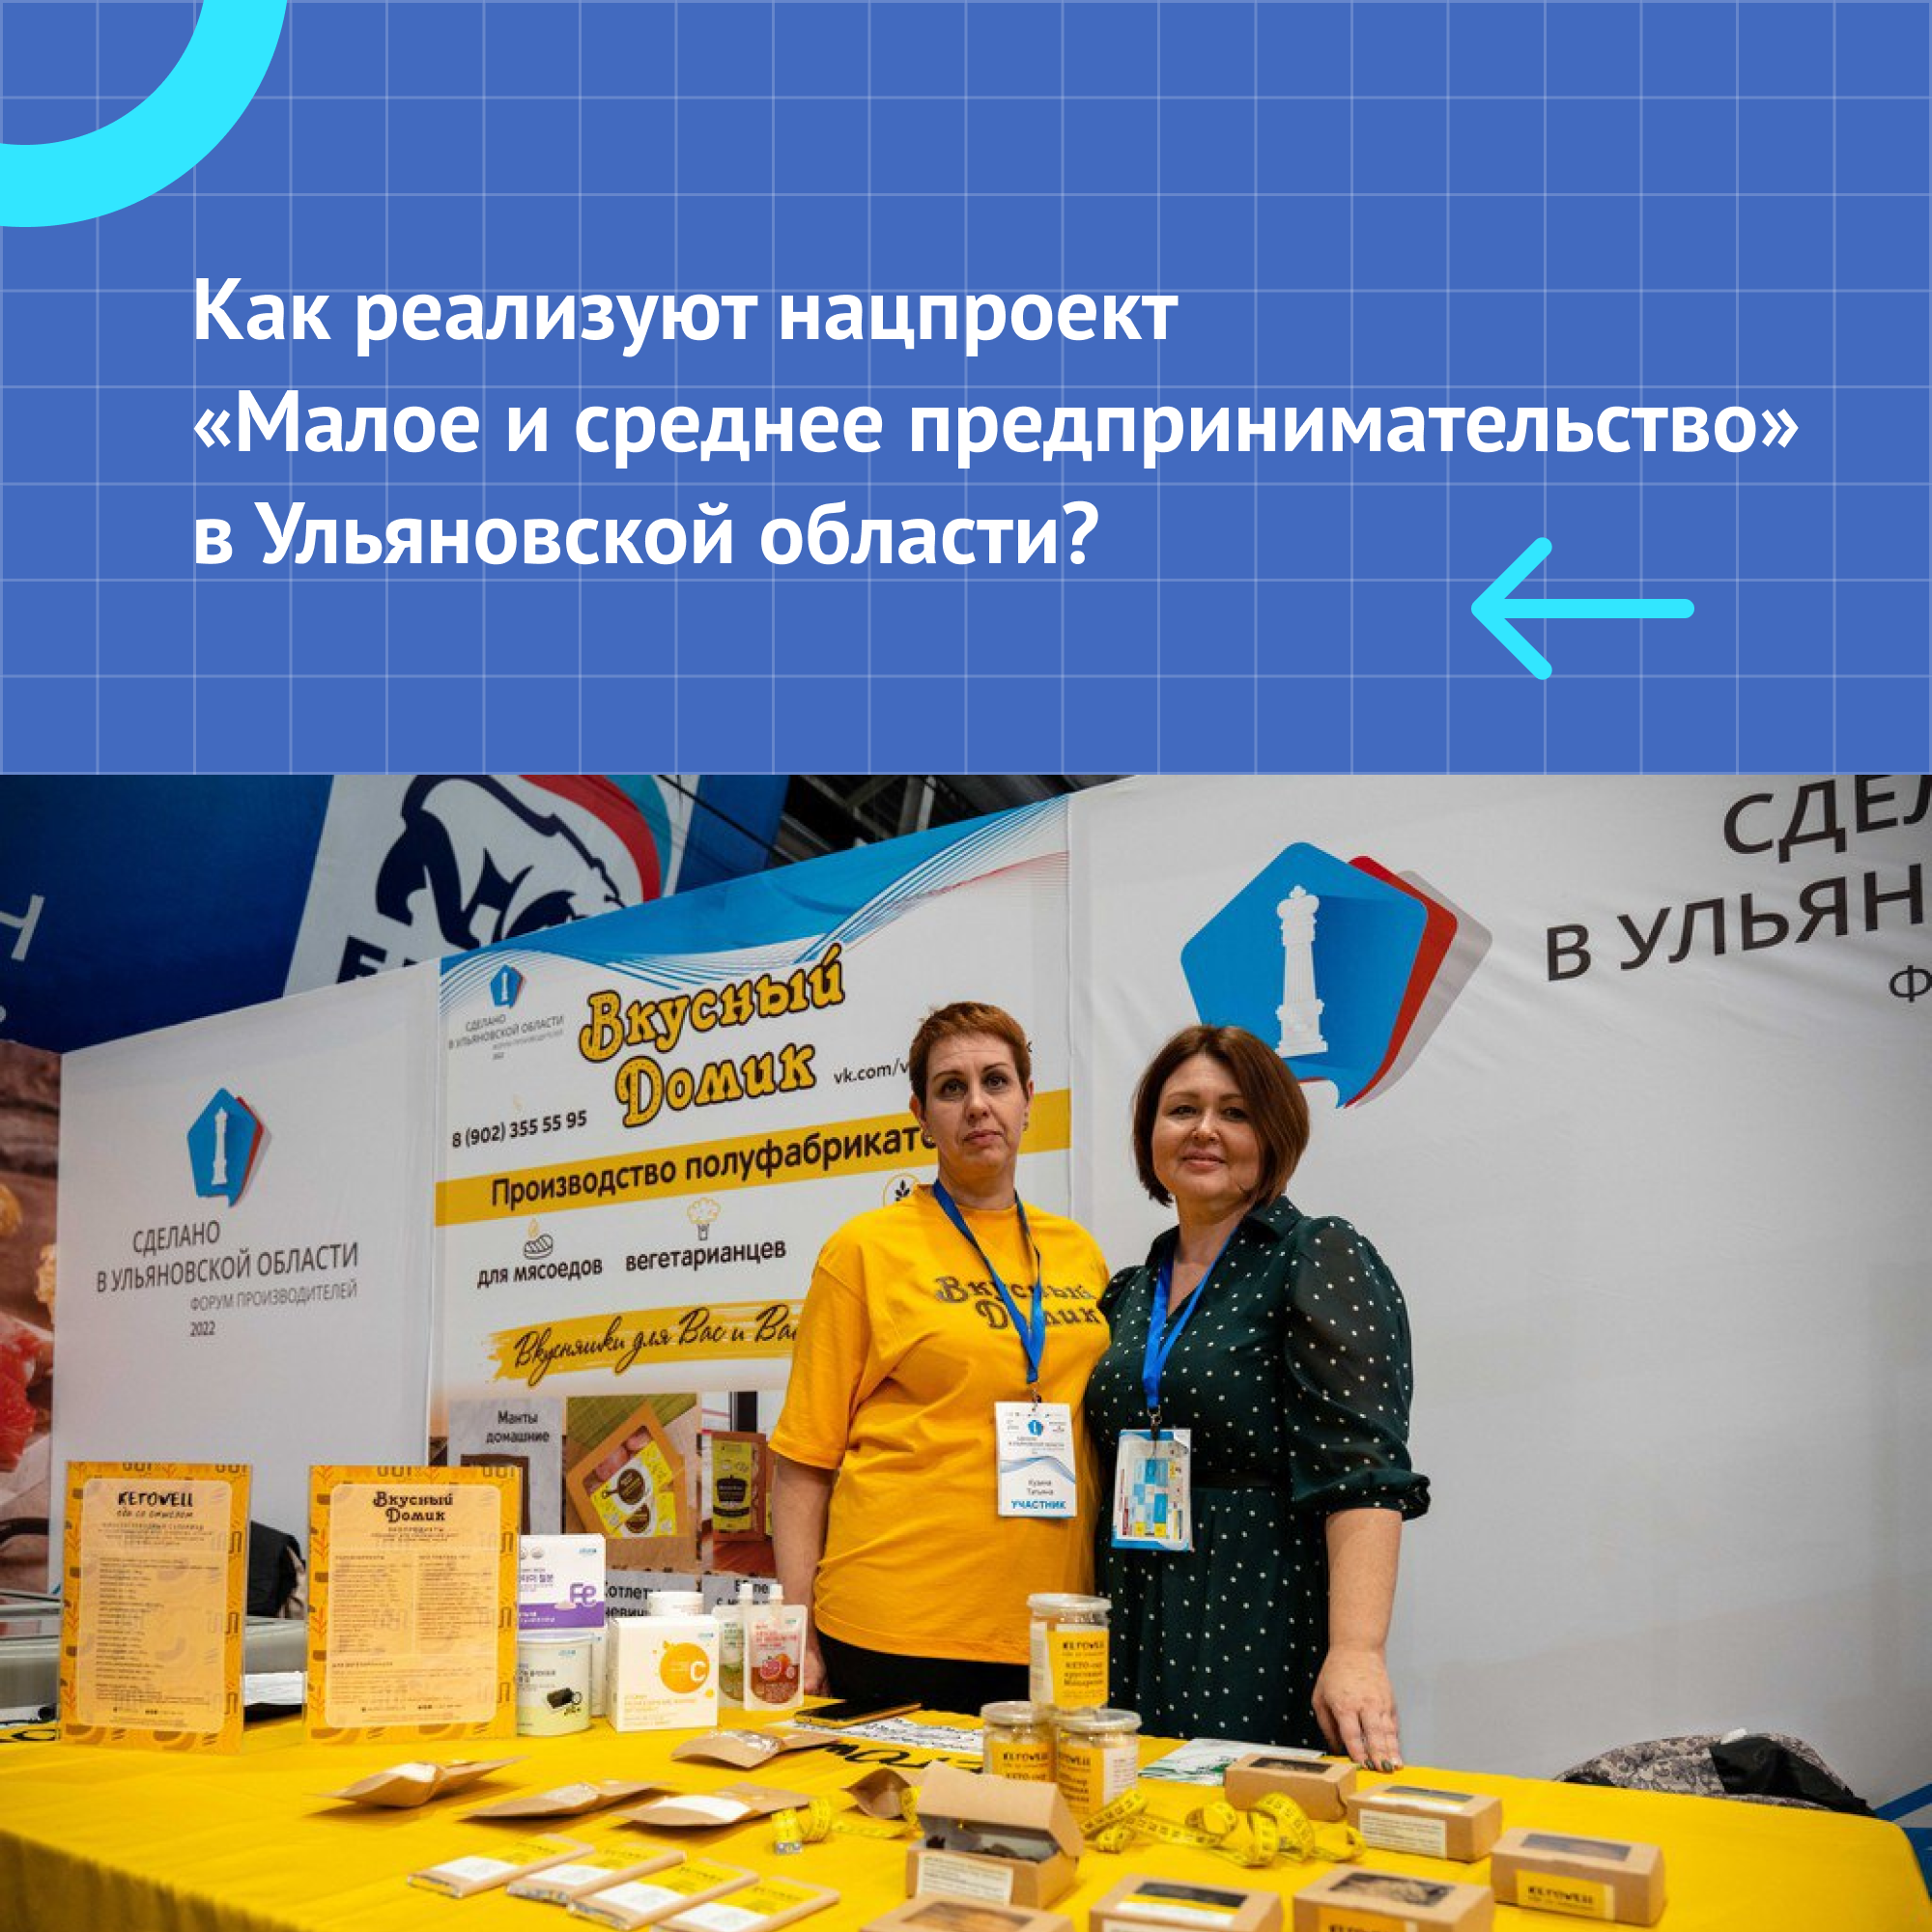 Неделя нацпроекта «Малое и среднее предпринимательство» проходит в Ульяновской области.